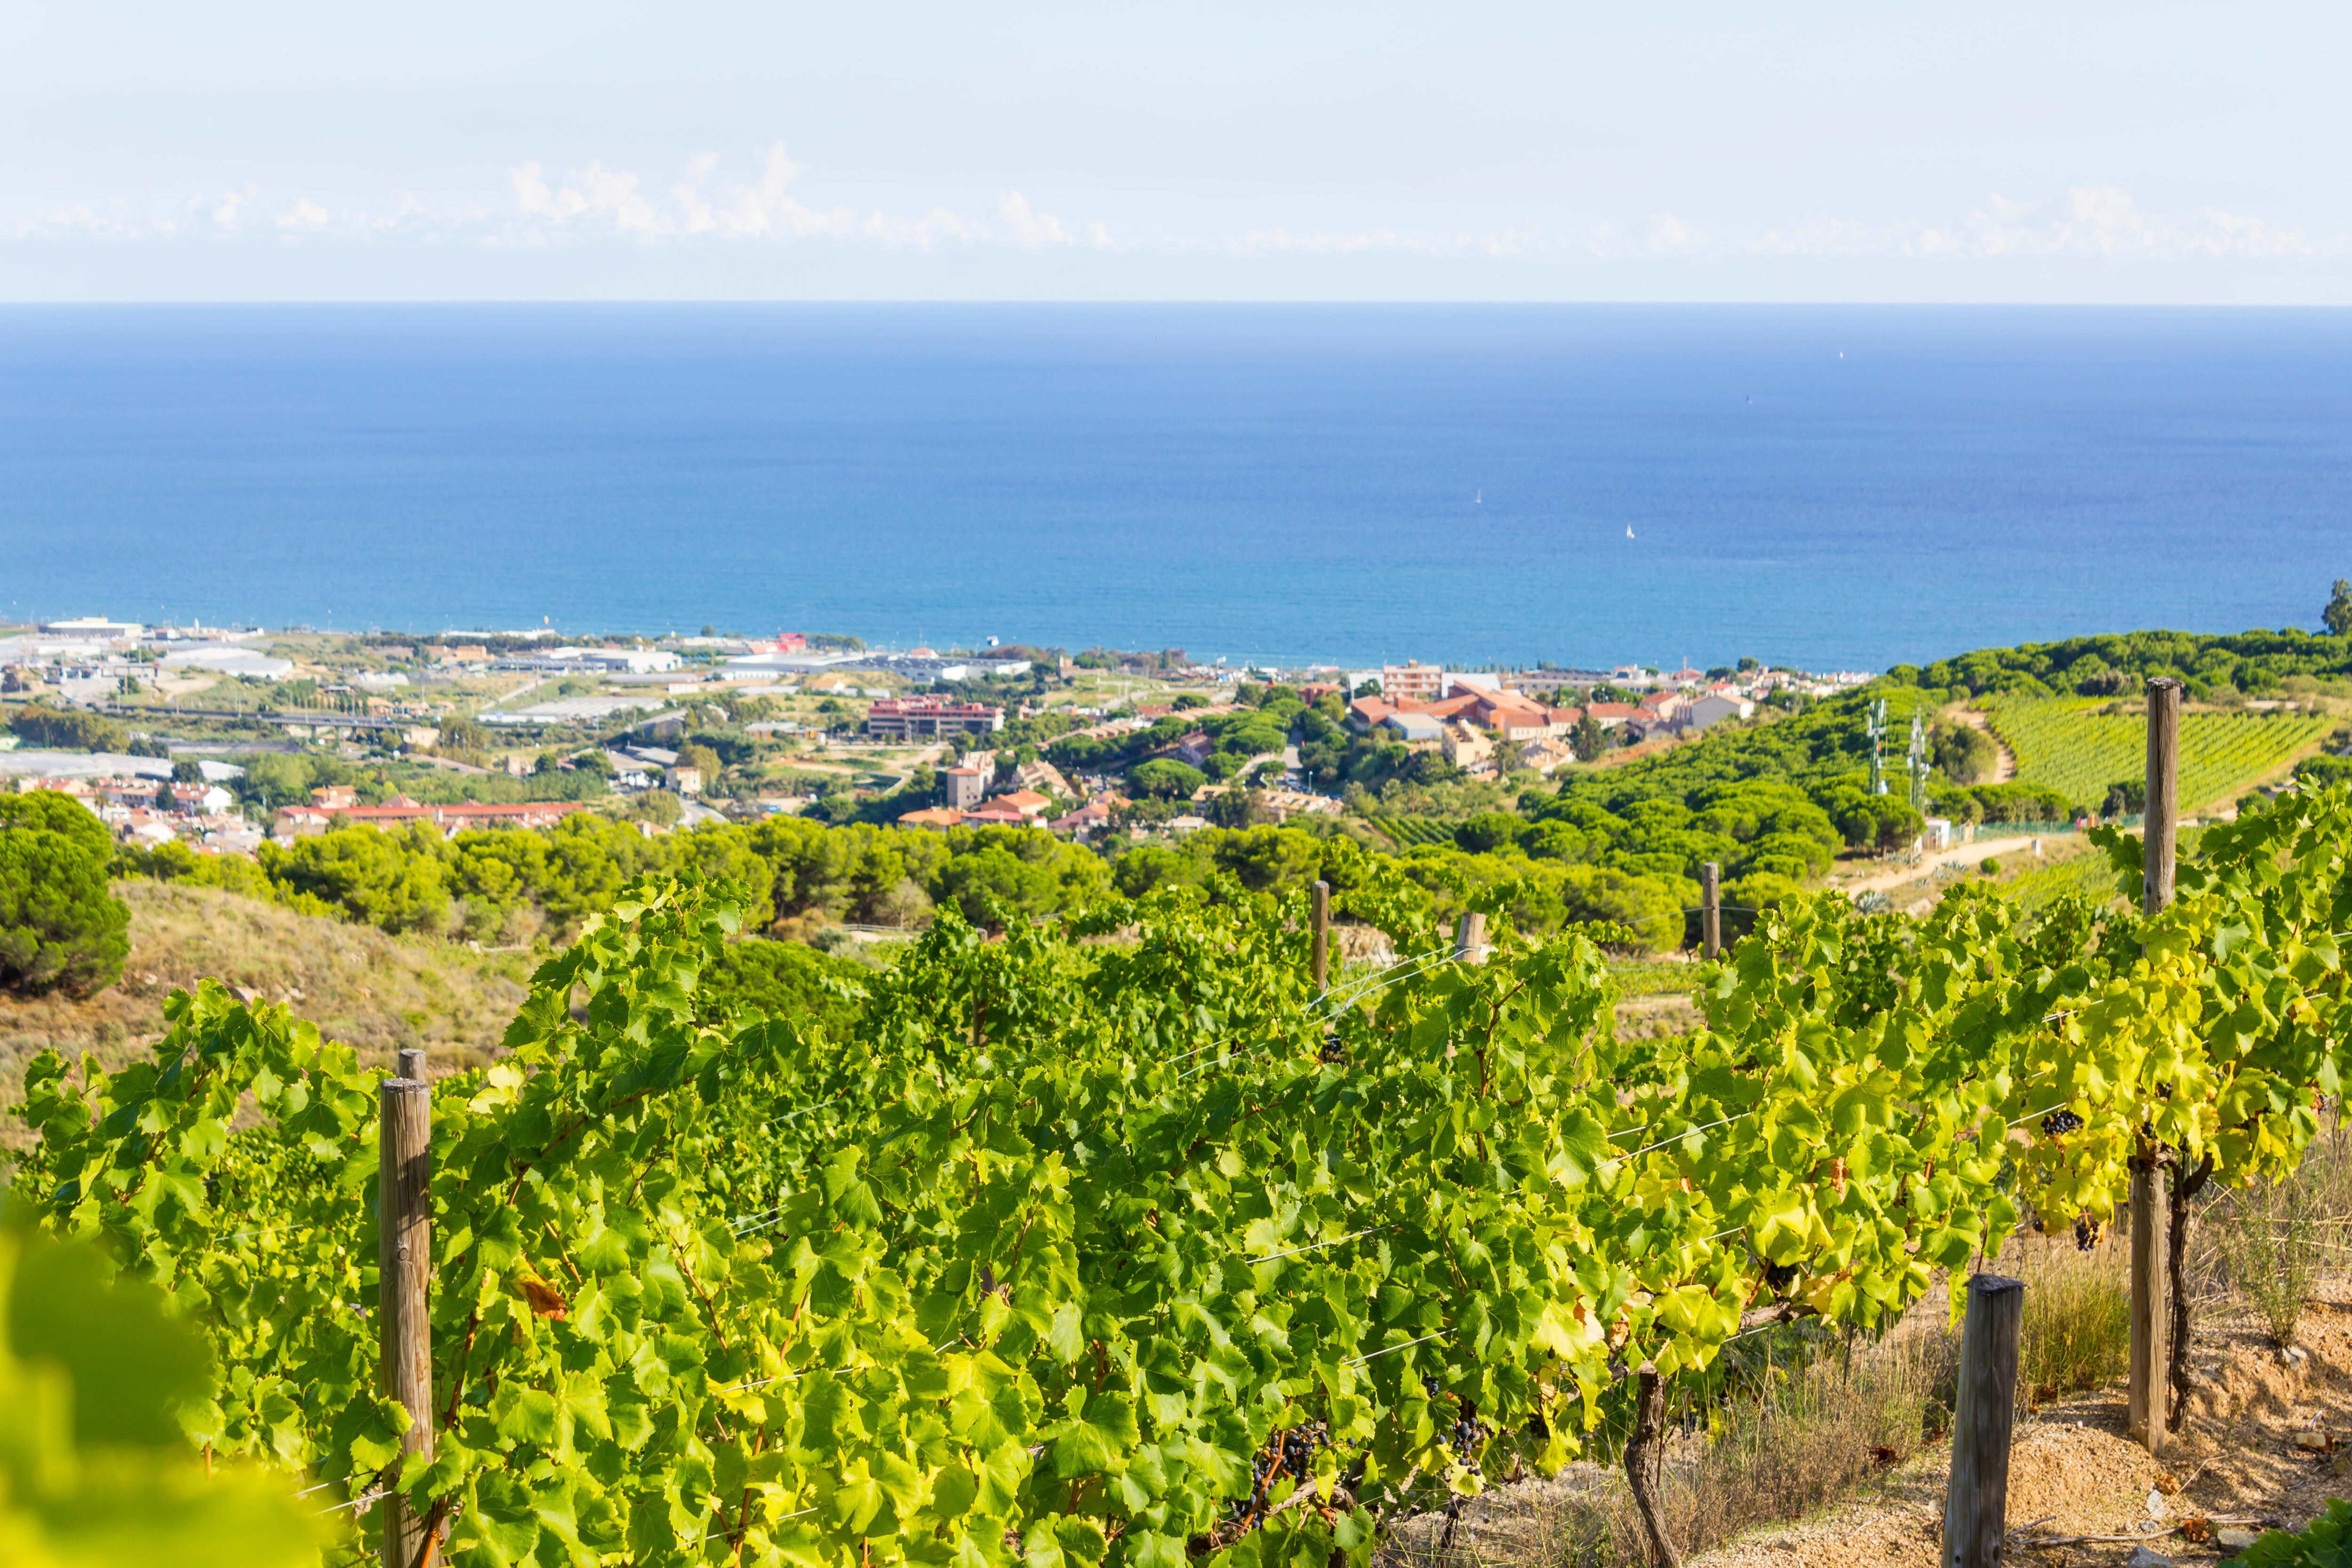 Les vinyes d'Alella, a la comarca del Maresme.